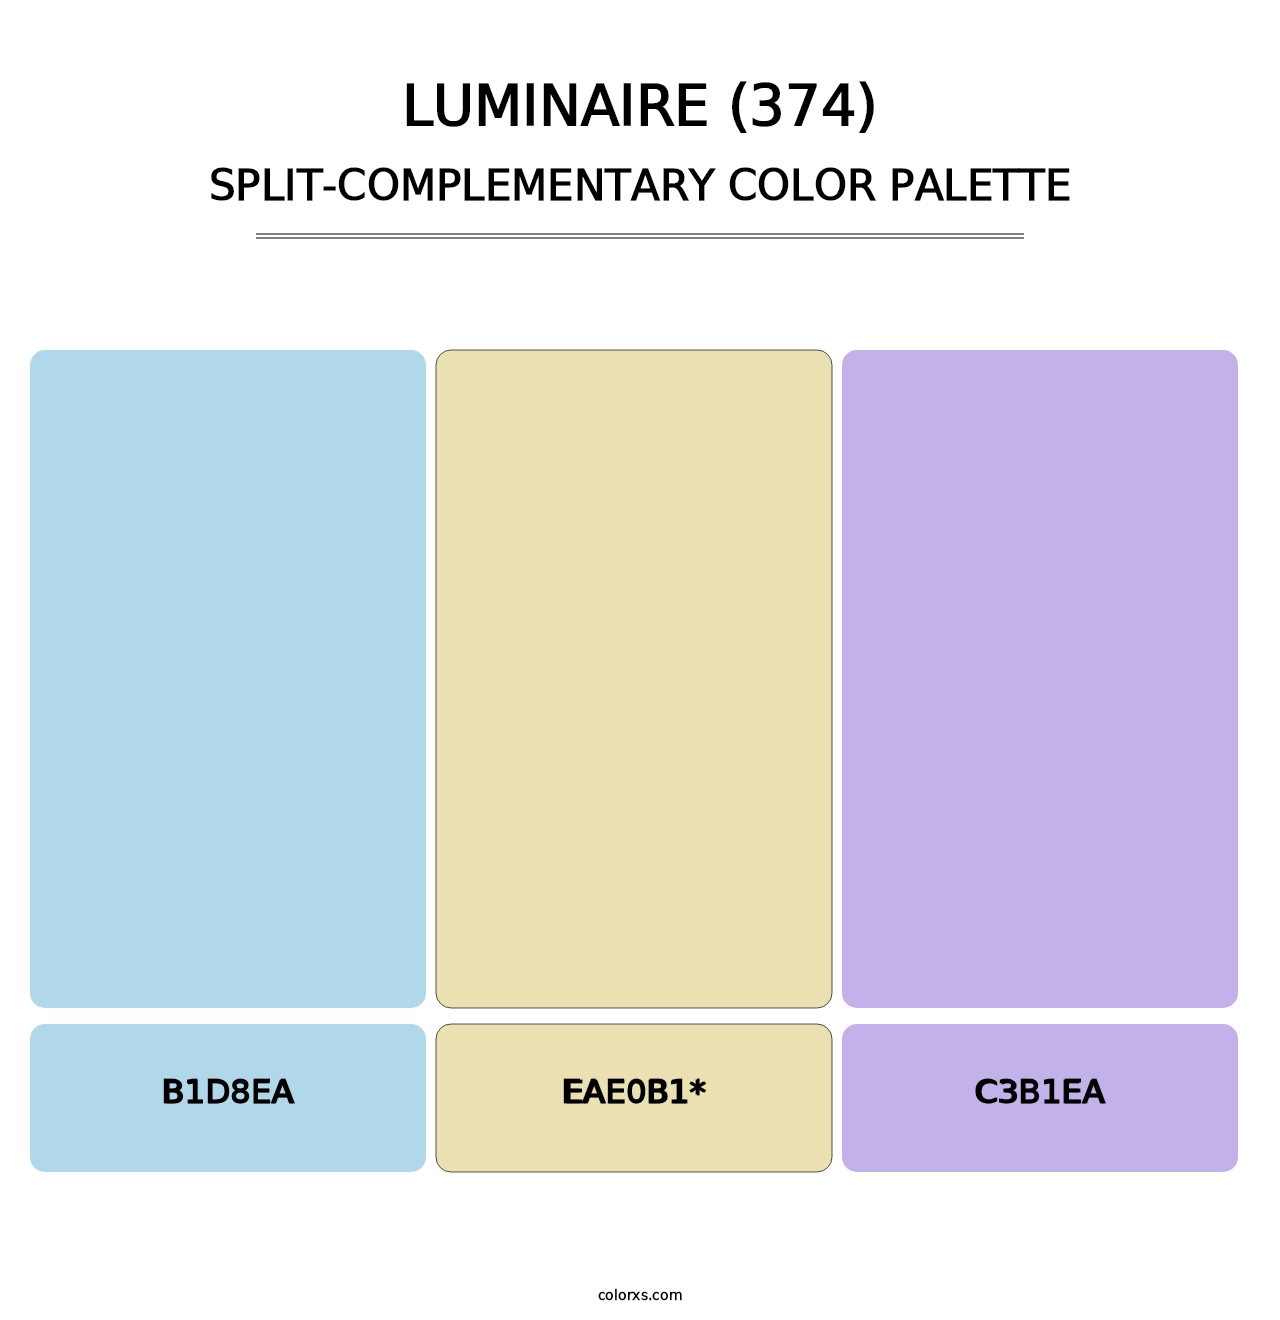 Luminaire (374) - Split-Complementary Color Palette